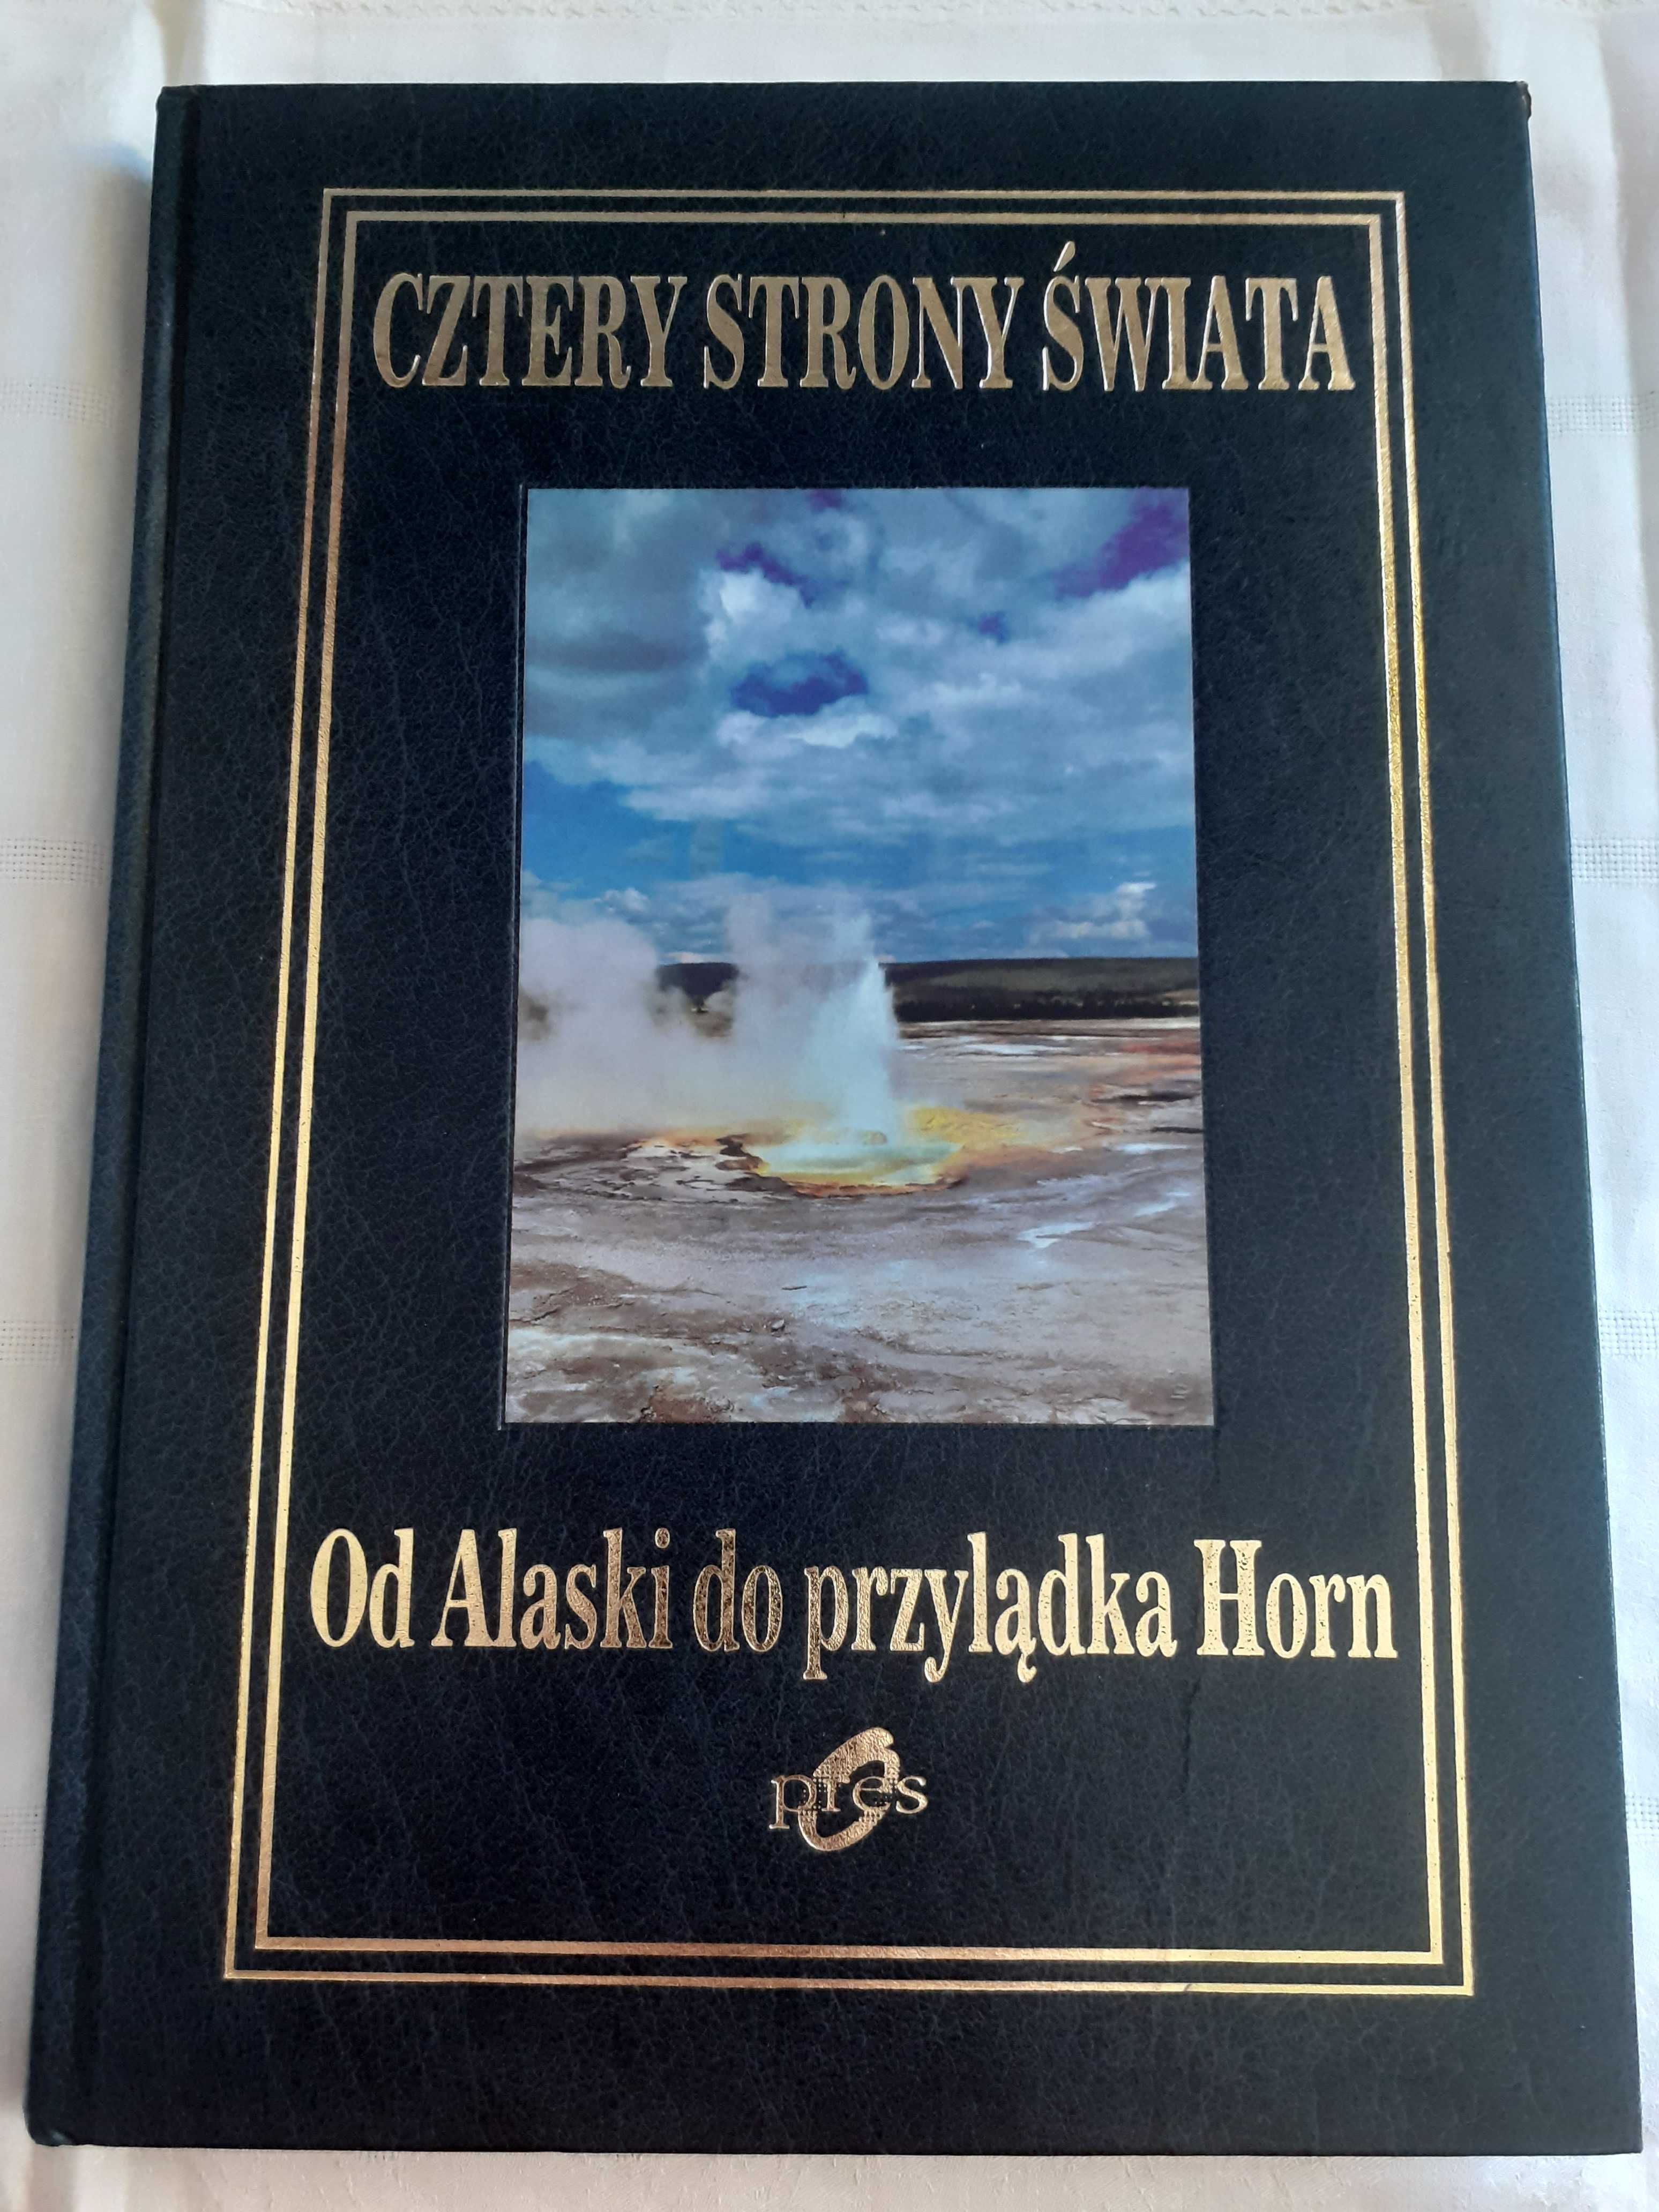 Album "Od Alaski do przylądka Horn"